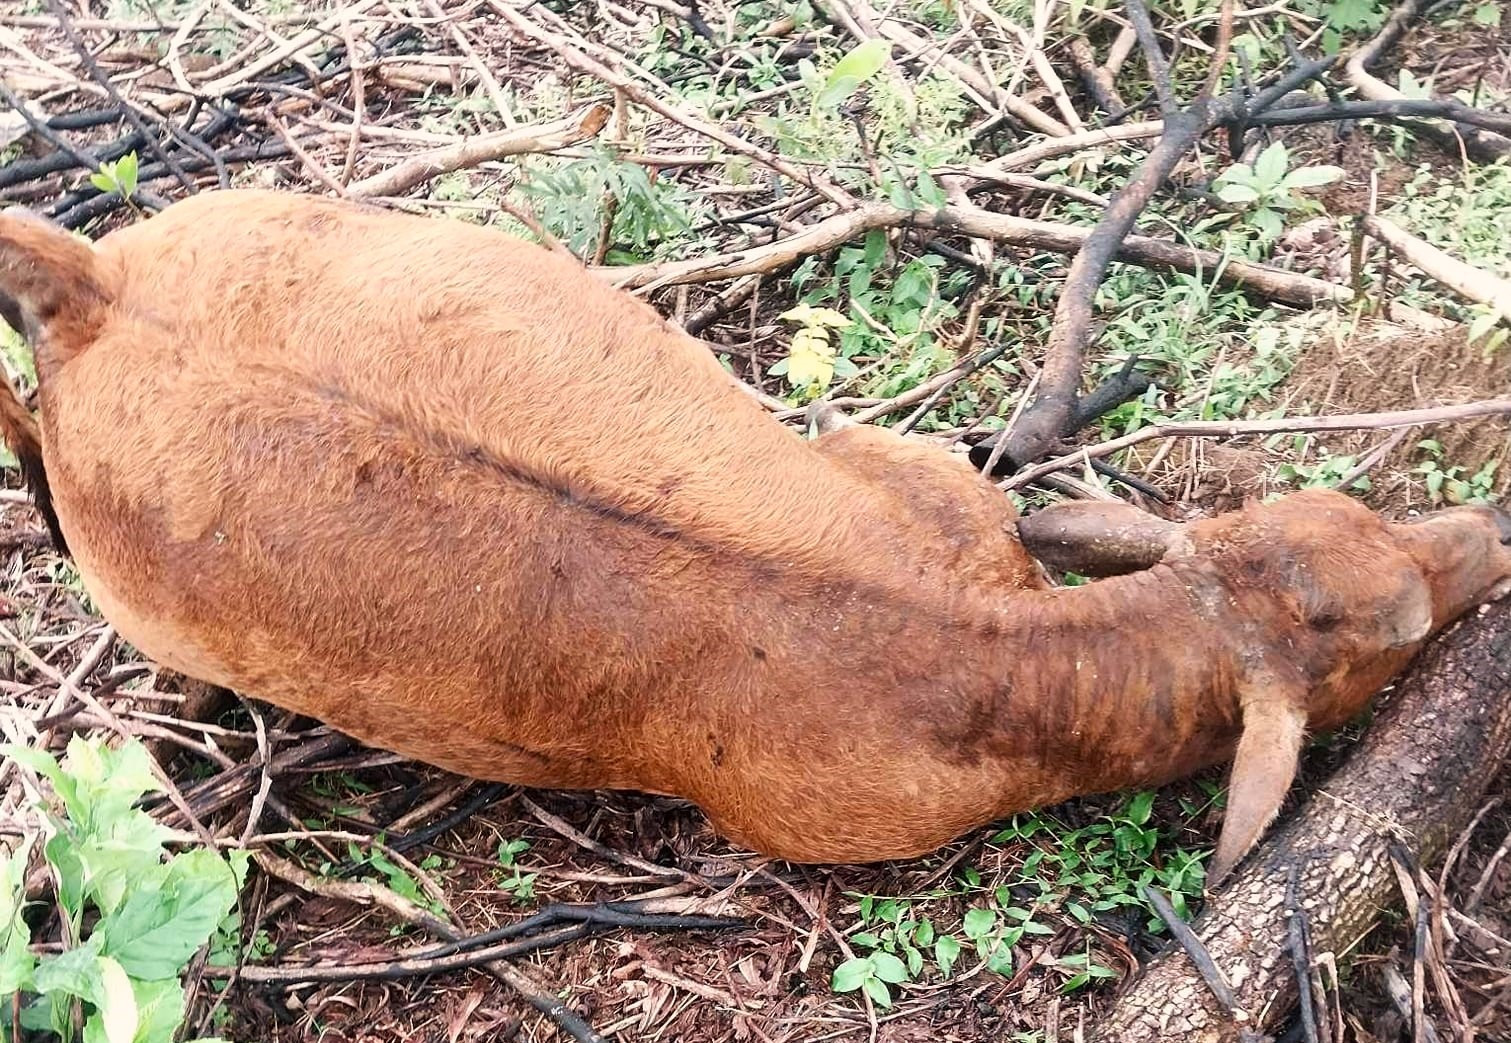 Con bò nhỏ trong số 3 còn bò phát hiện bị chết trong rẫy keo khu Hố Tân, làng Hoà An cũng có dấu hiệu trương phình, phân huỷ. Ảnh: Ông Q cung cấp.